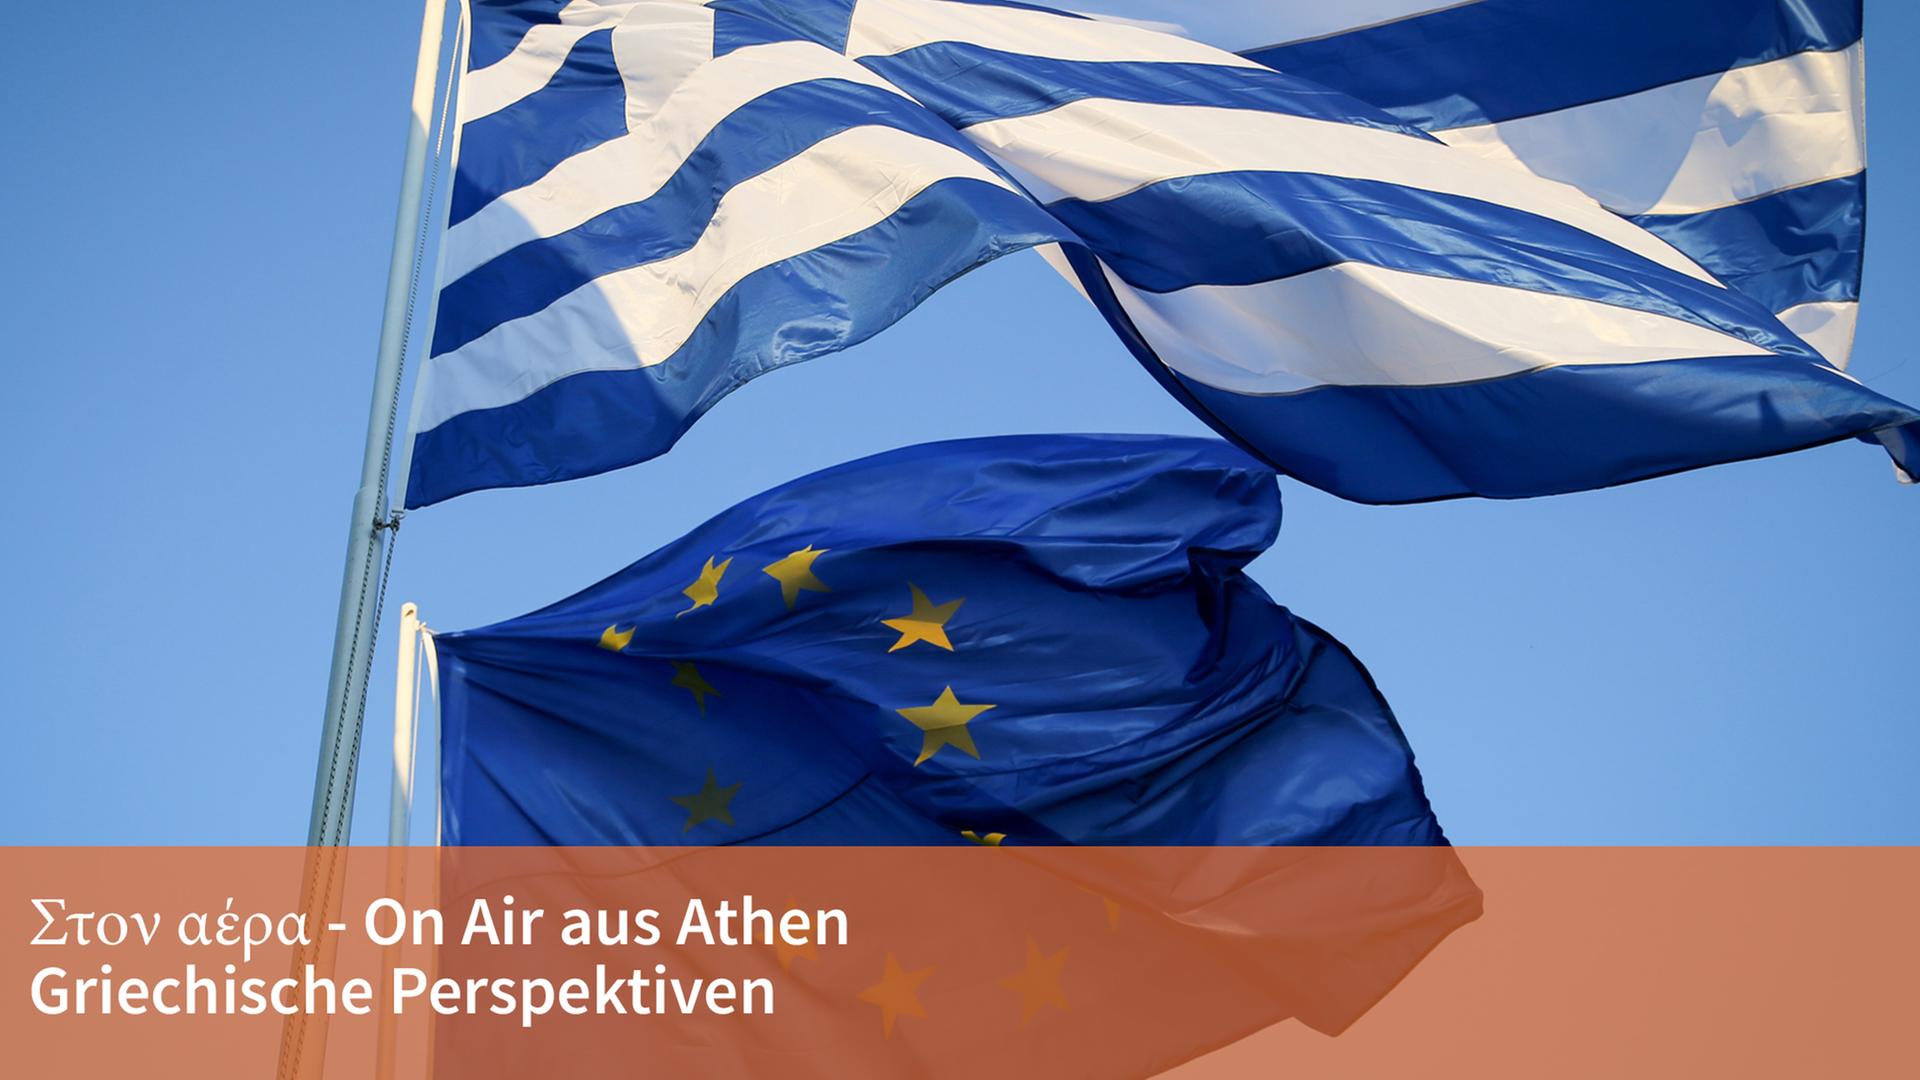 Die Fahnen von Griechenland und der Europäischen Union